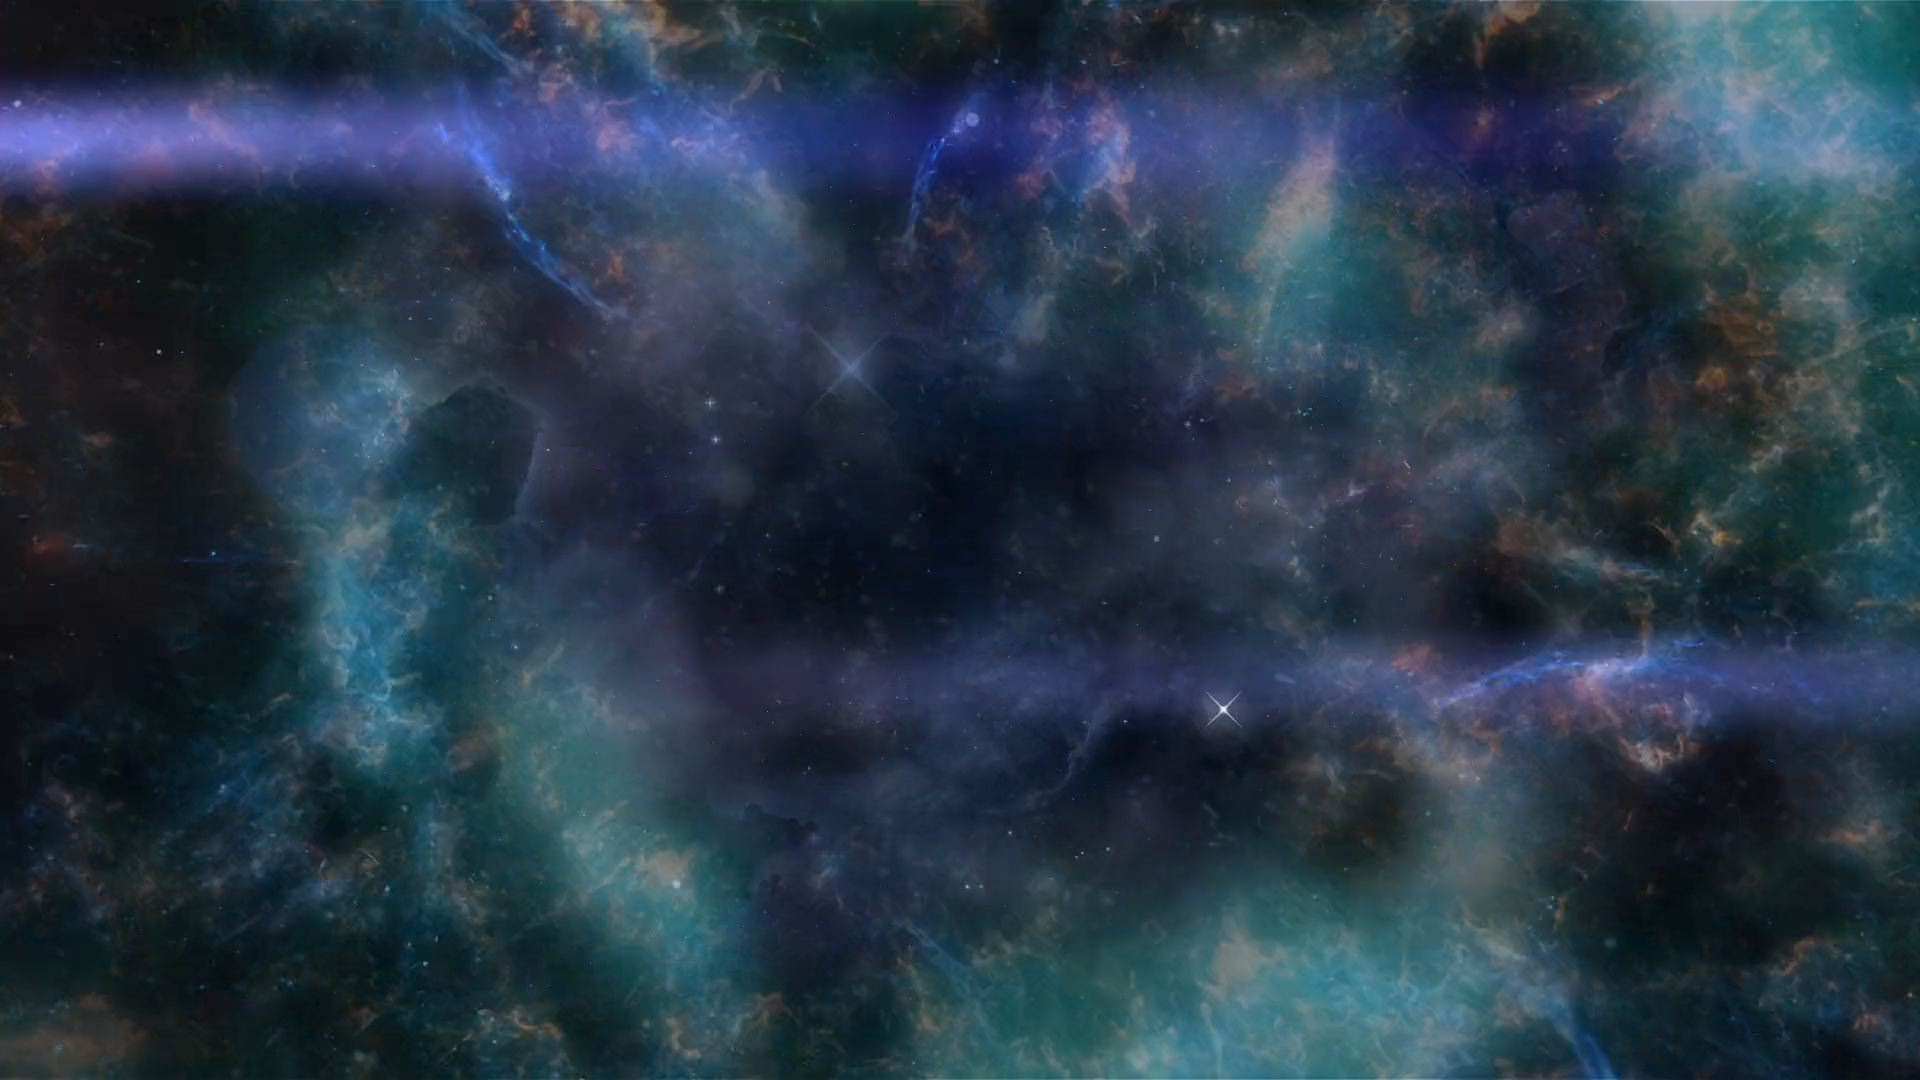 A CG galaxy